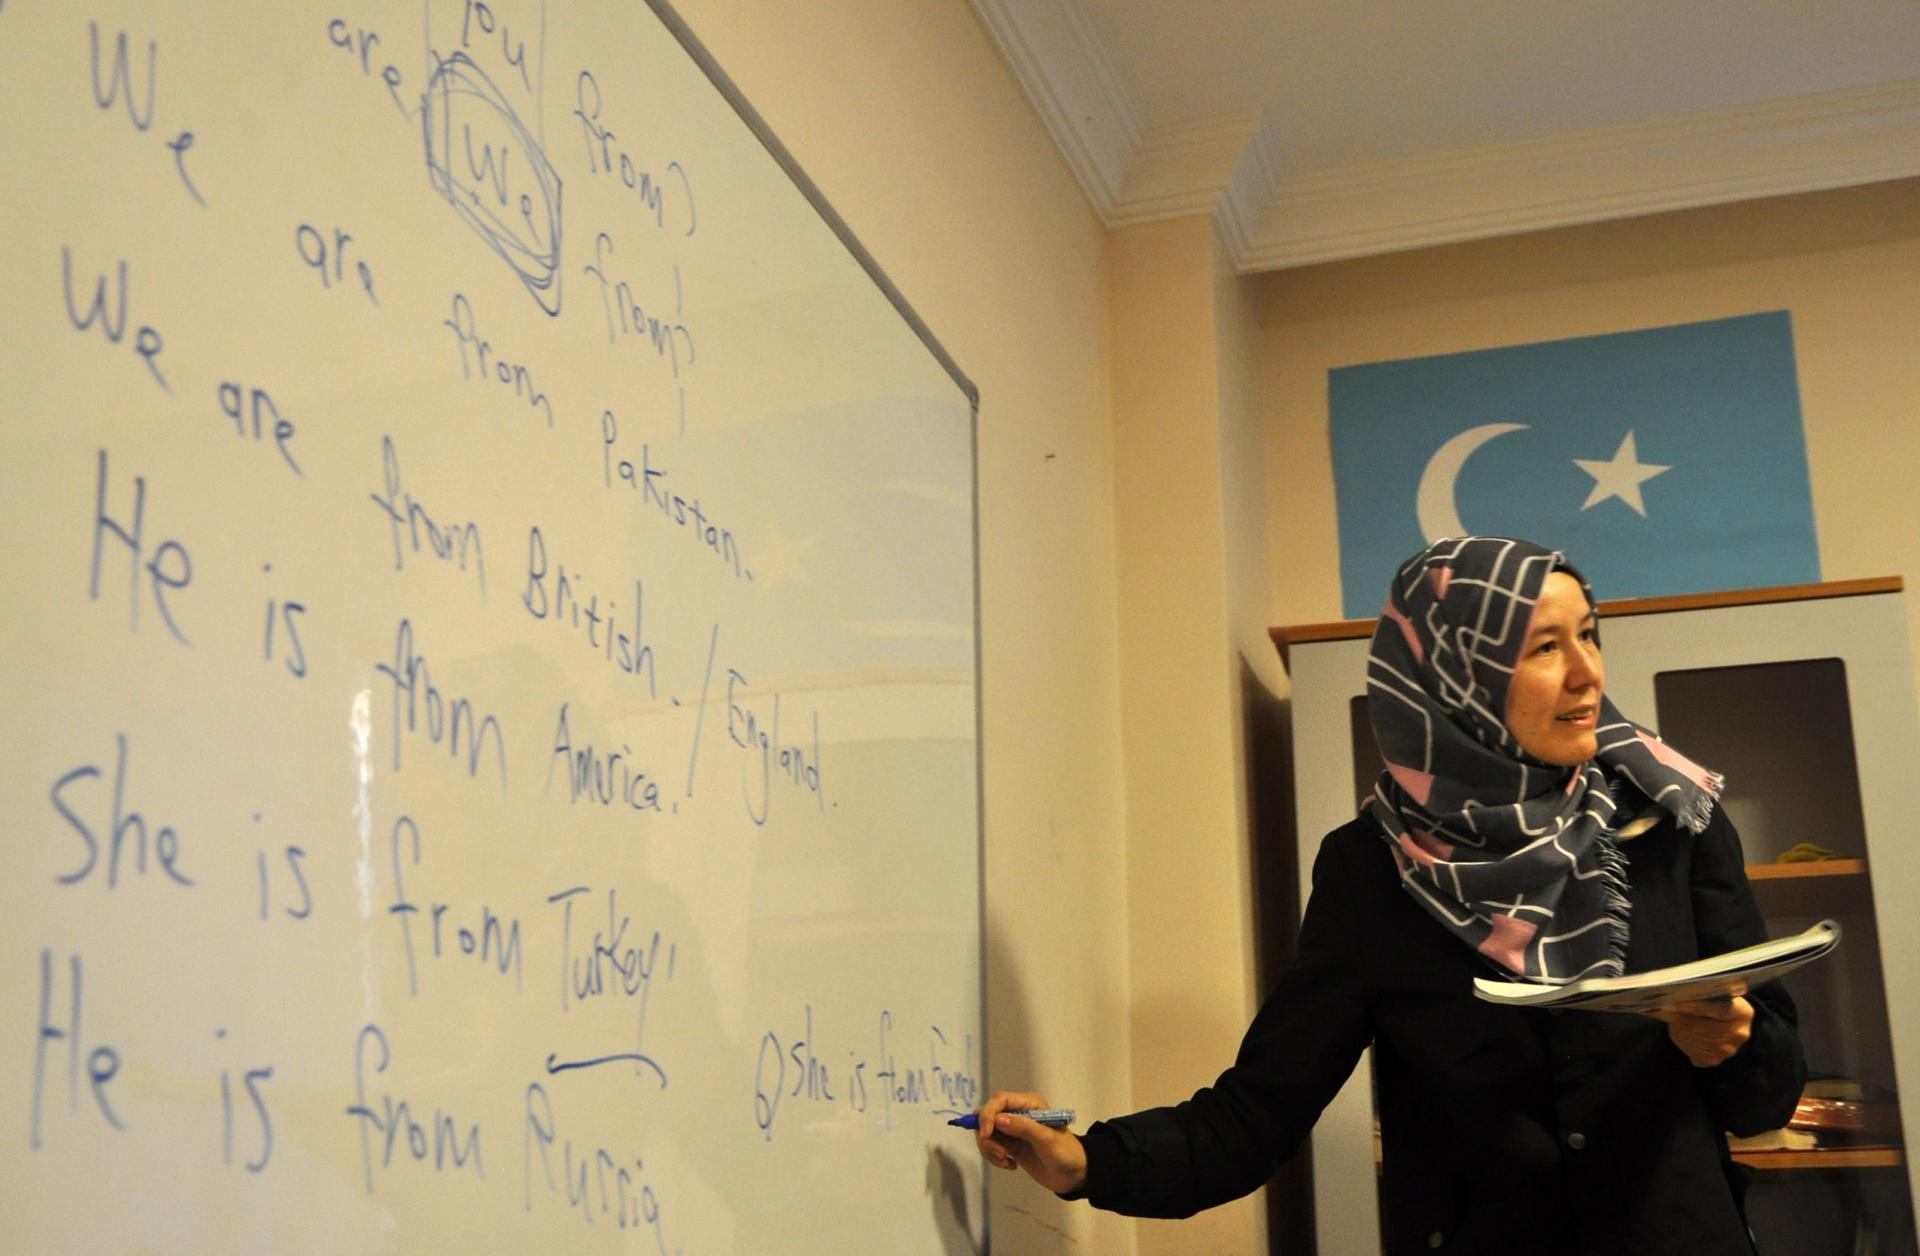 A teacher conducts an evening English class at Oku Uygur Bilig Yurdu, a school for Uighur children.